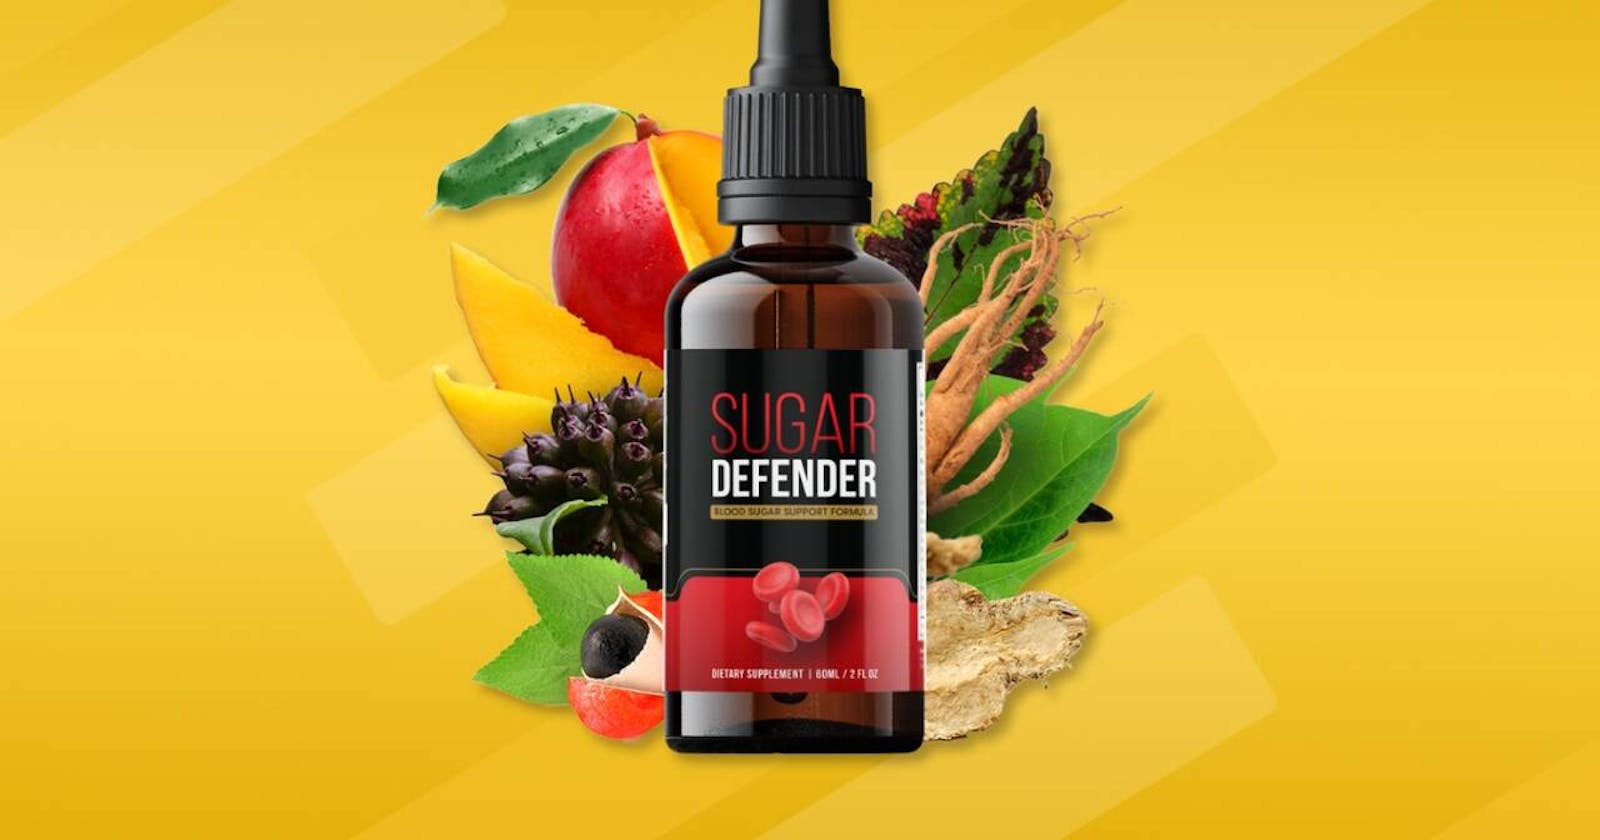 Sugar Defender Amazon